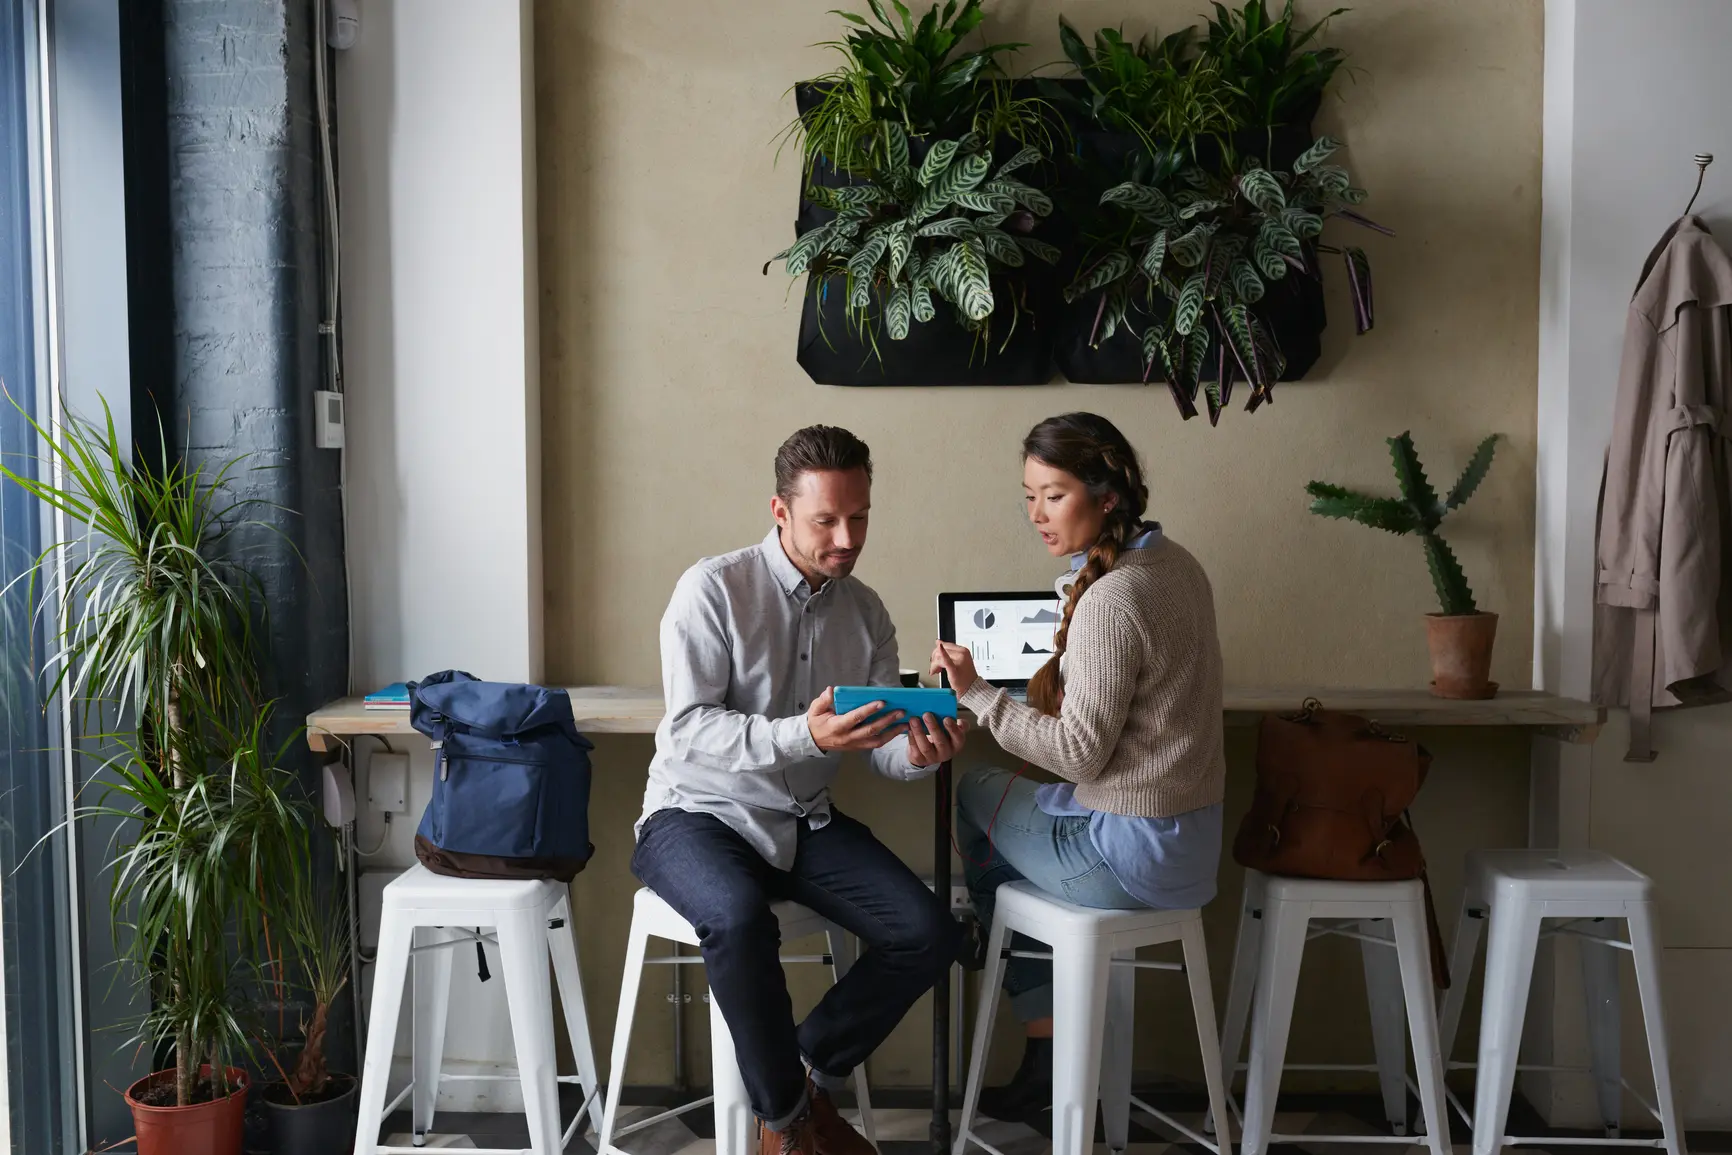 Zwei junge Unternehmer evaluieren Kennzahlen und Statistiken in einem modernen Cafe.